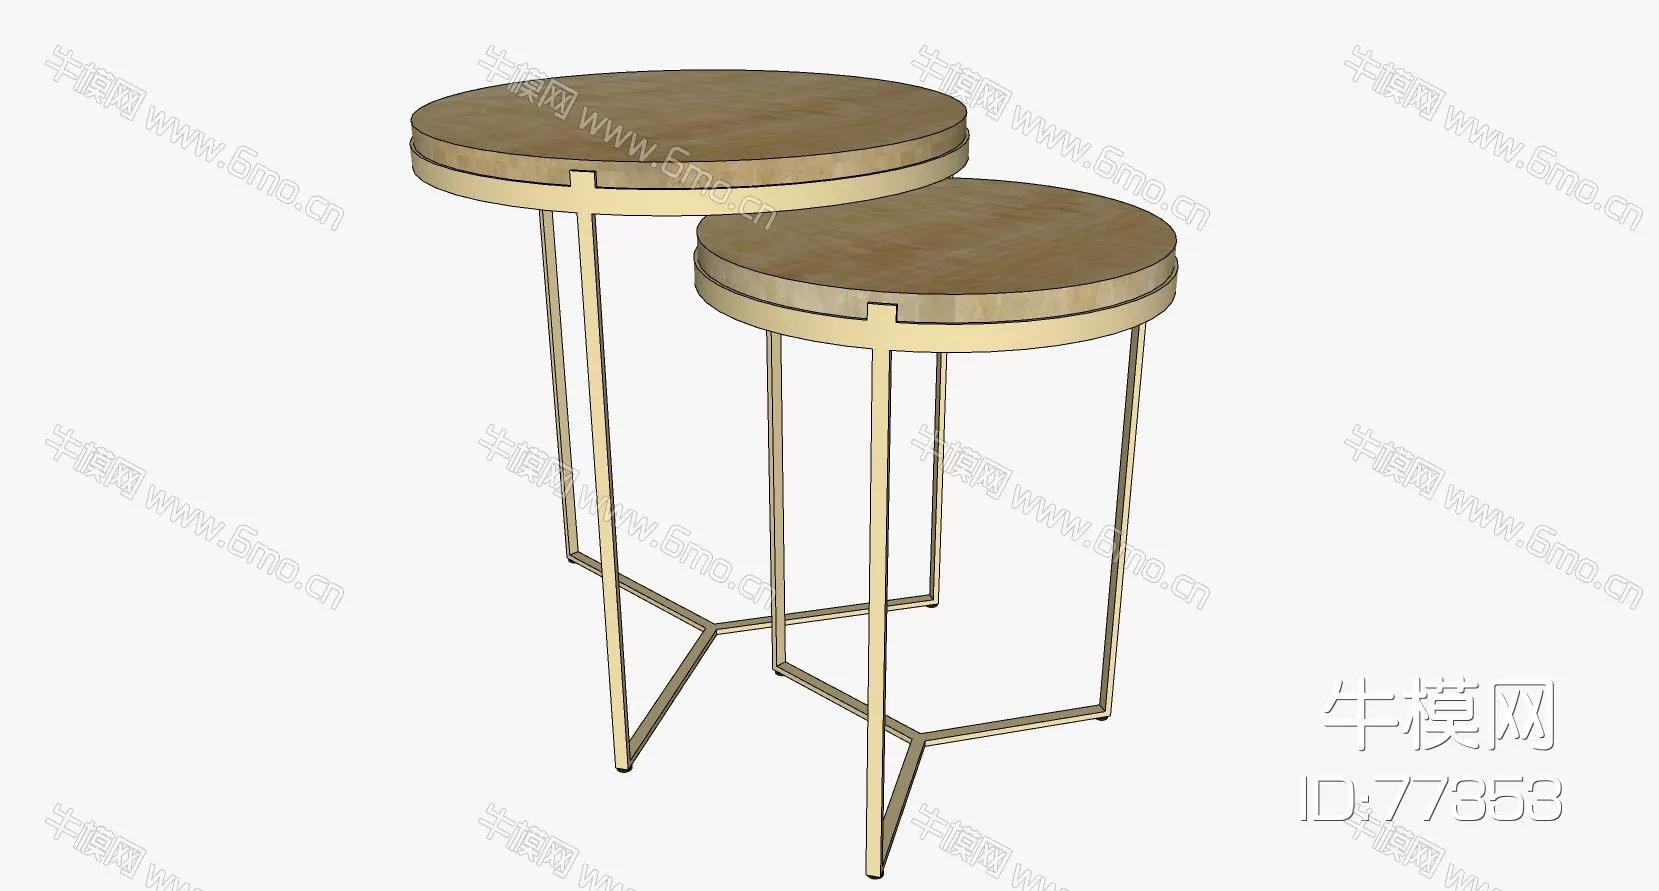 NORDIC SIDE TABLE - SKETCHUP 3D MODEL - ENSCAPE - 77353